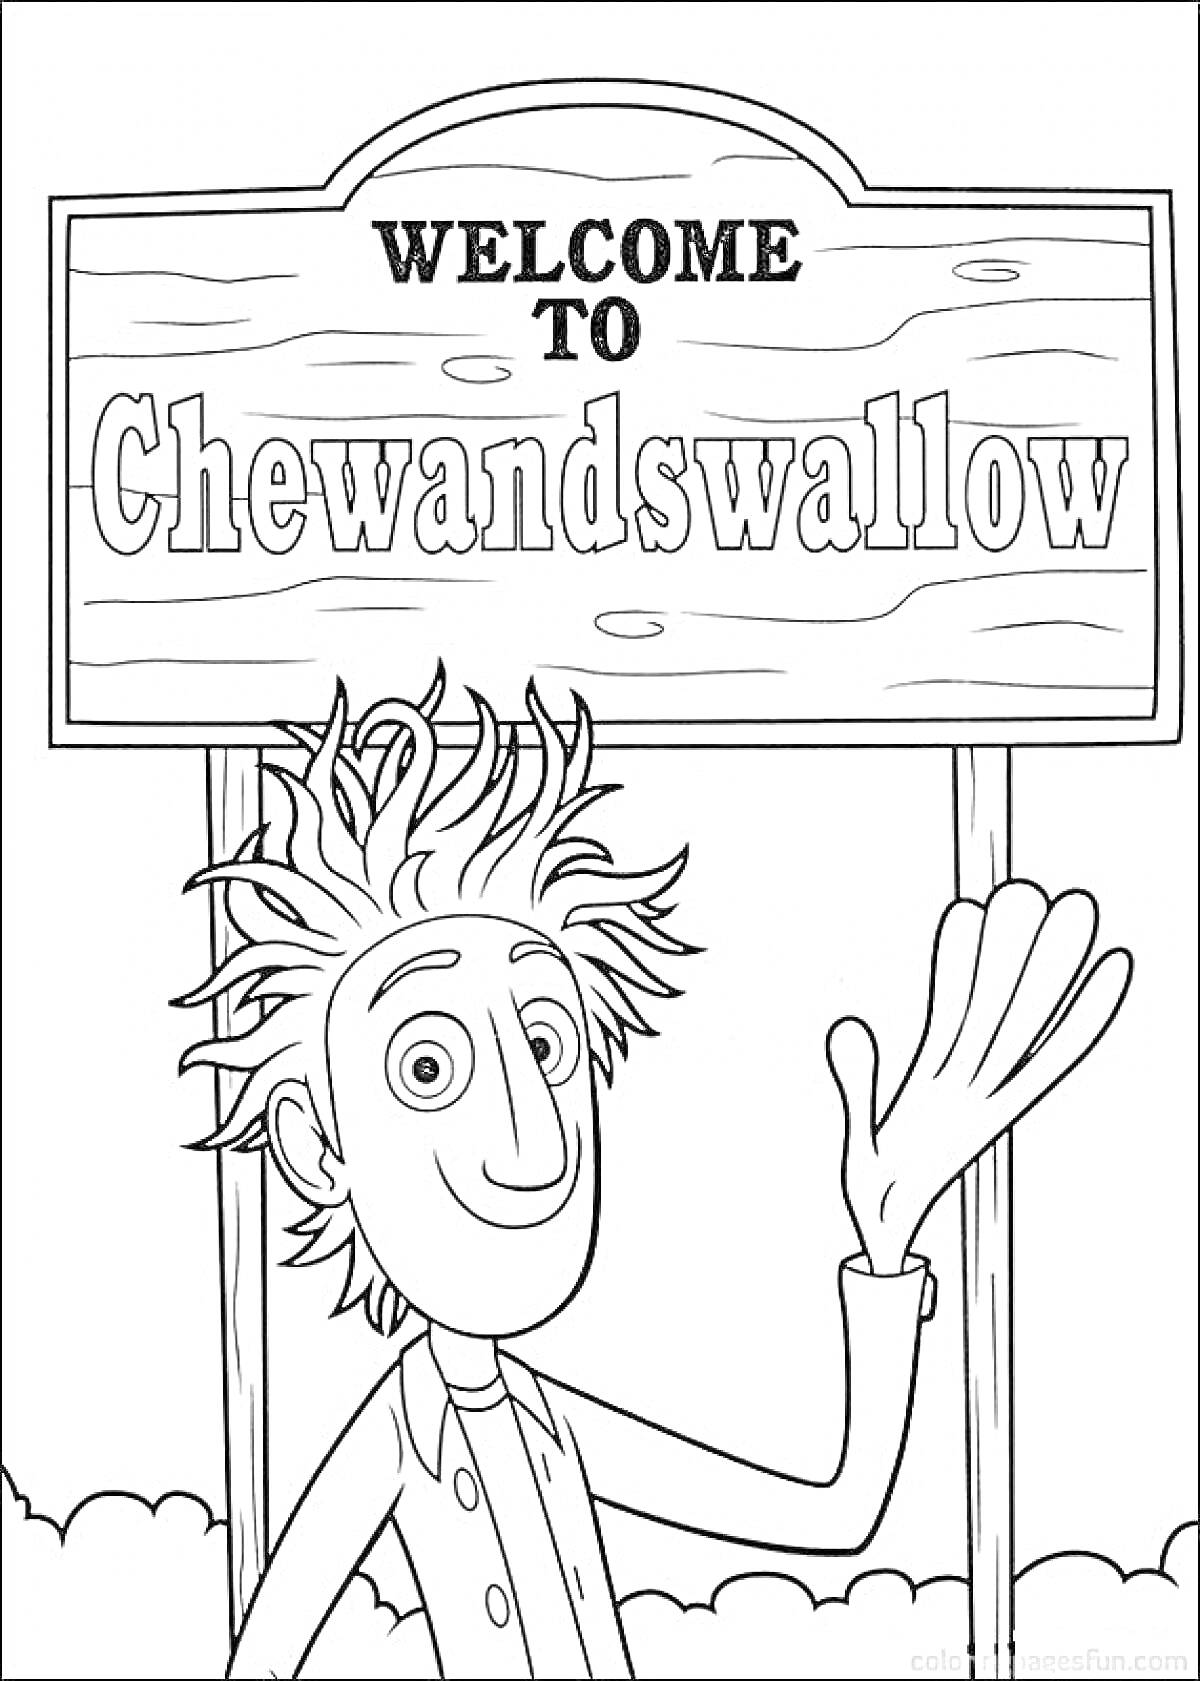 Приветственный знак города Chewandswallow с улыбающимся мужчиной, машущим рукой